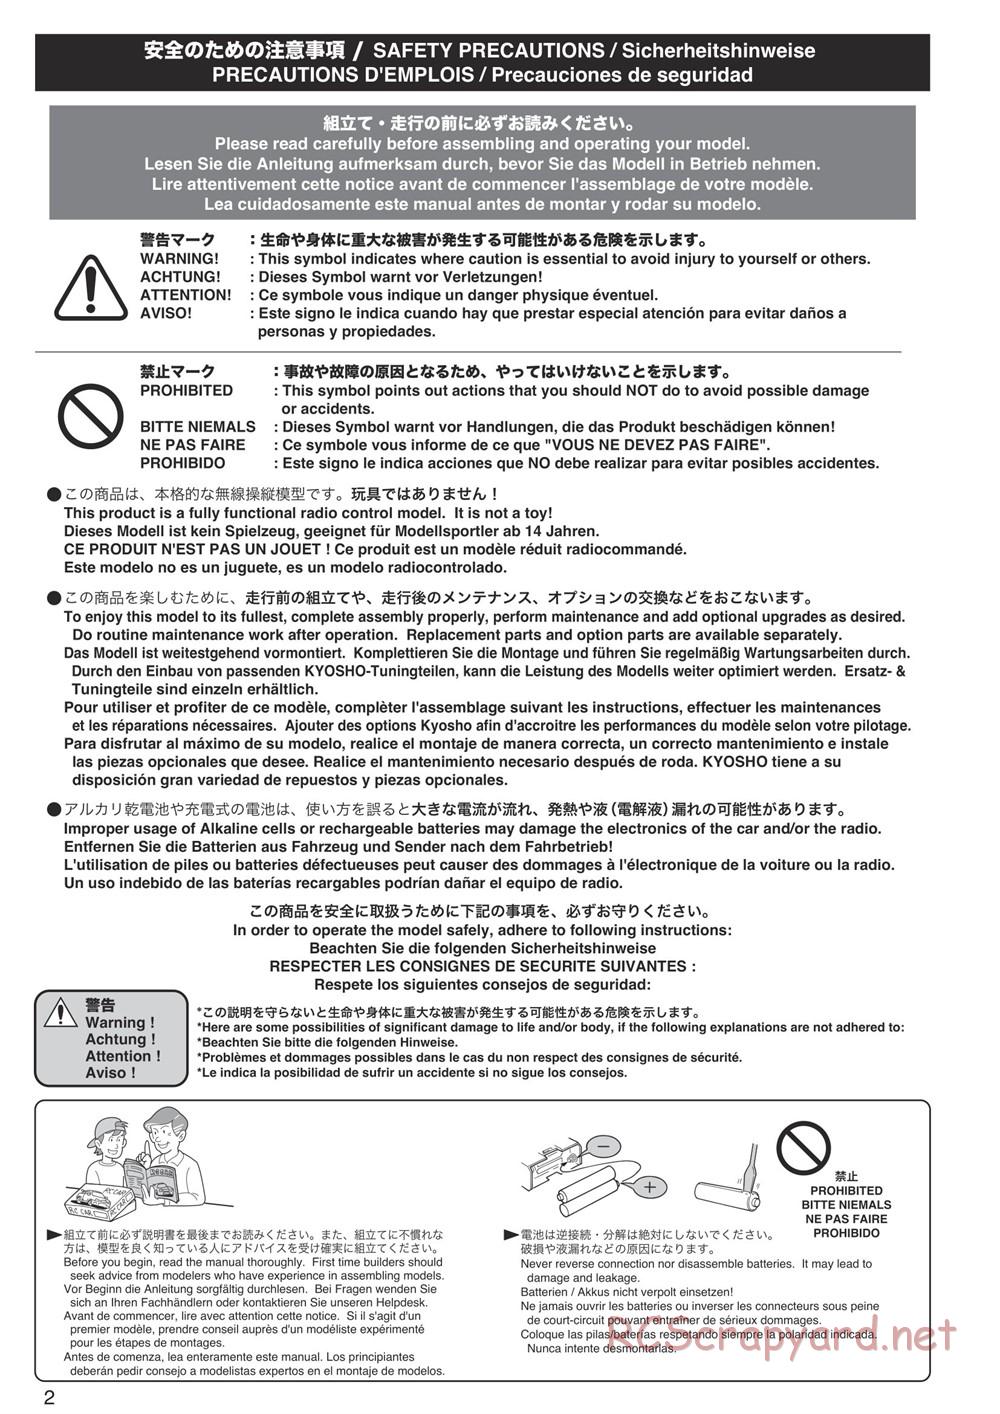 Kyosho - DBX-VE - Manual - Page 2